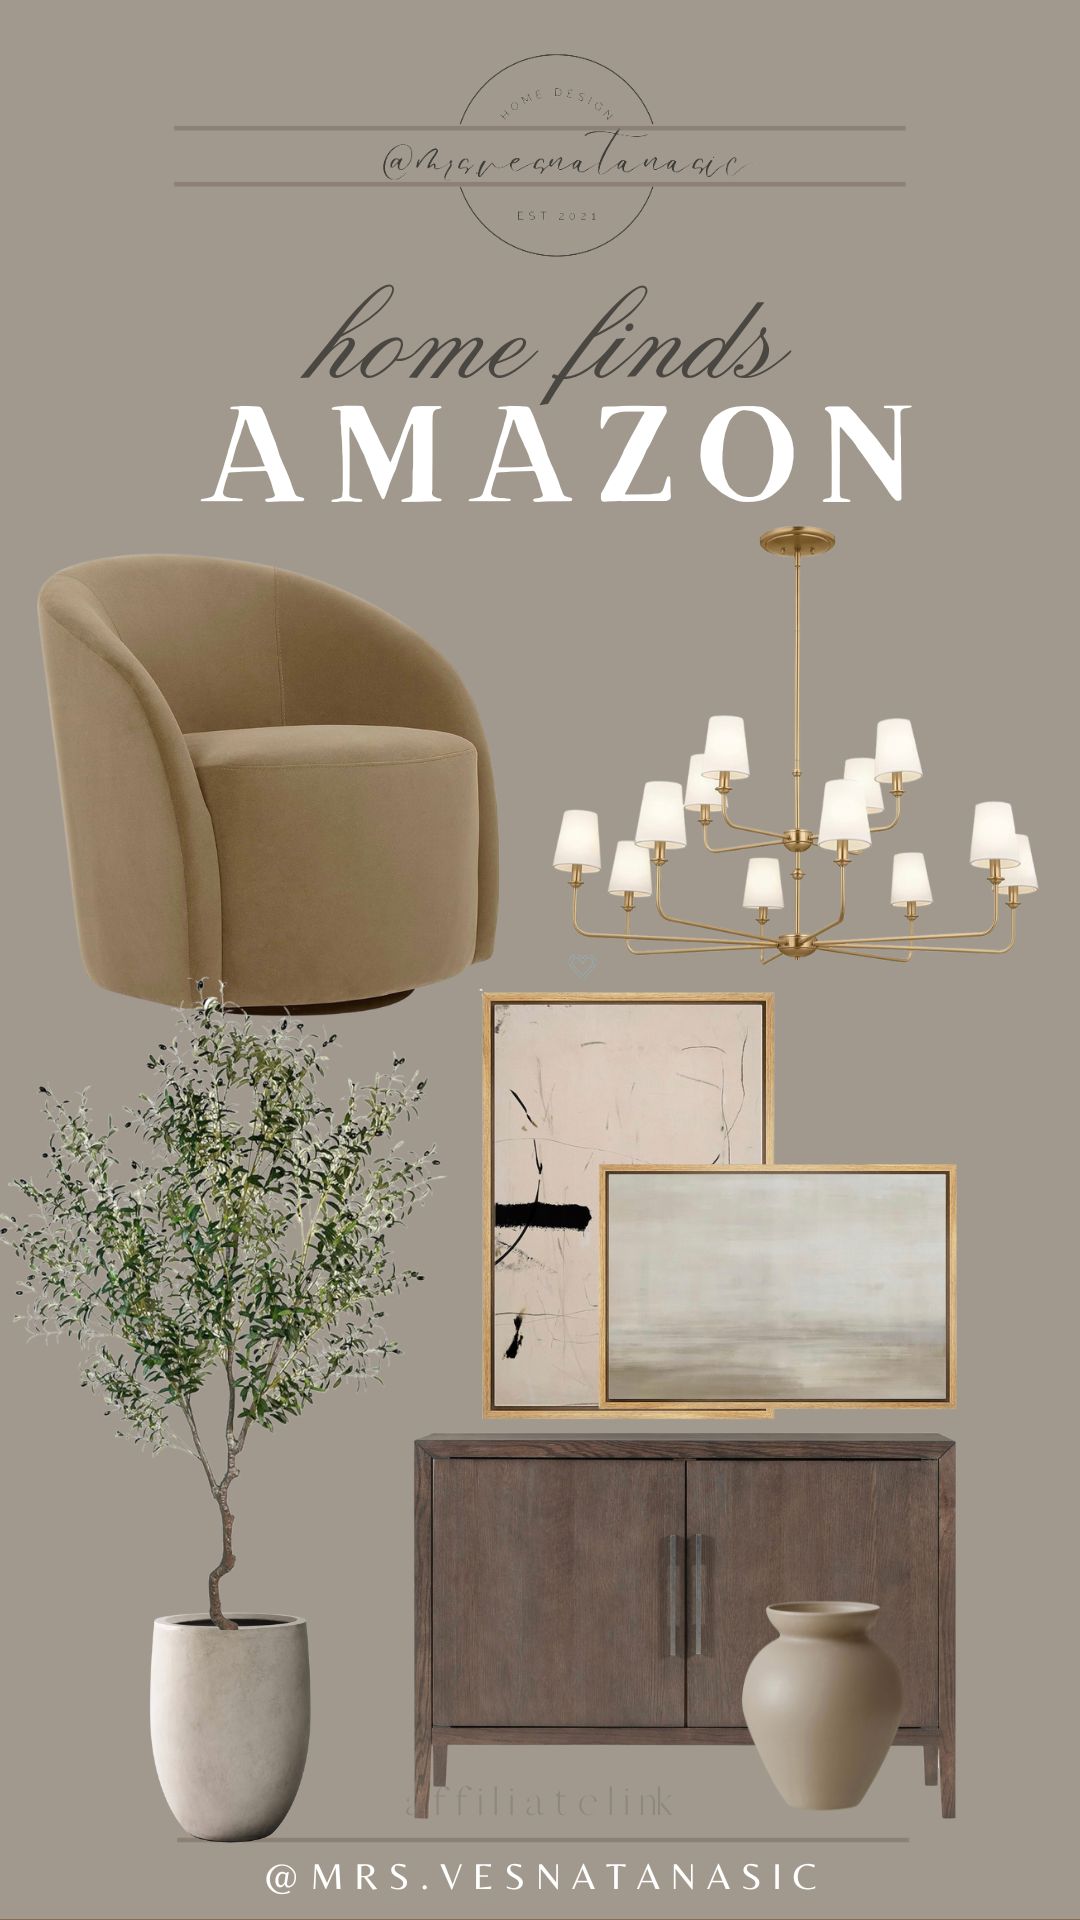 Amazon home finds | Amazon (US)